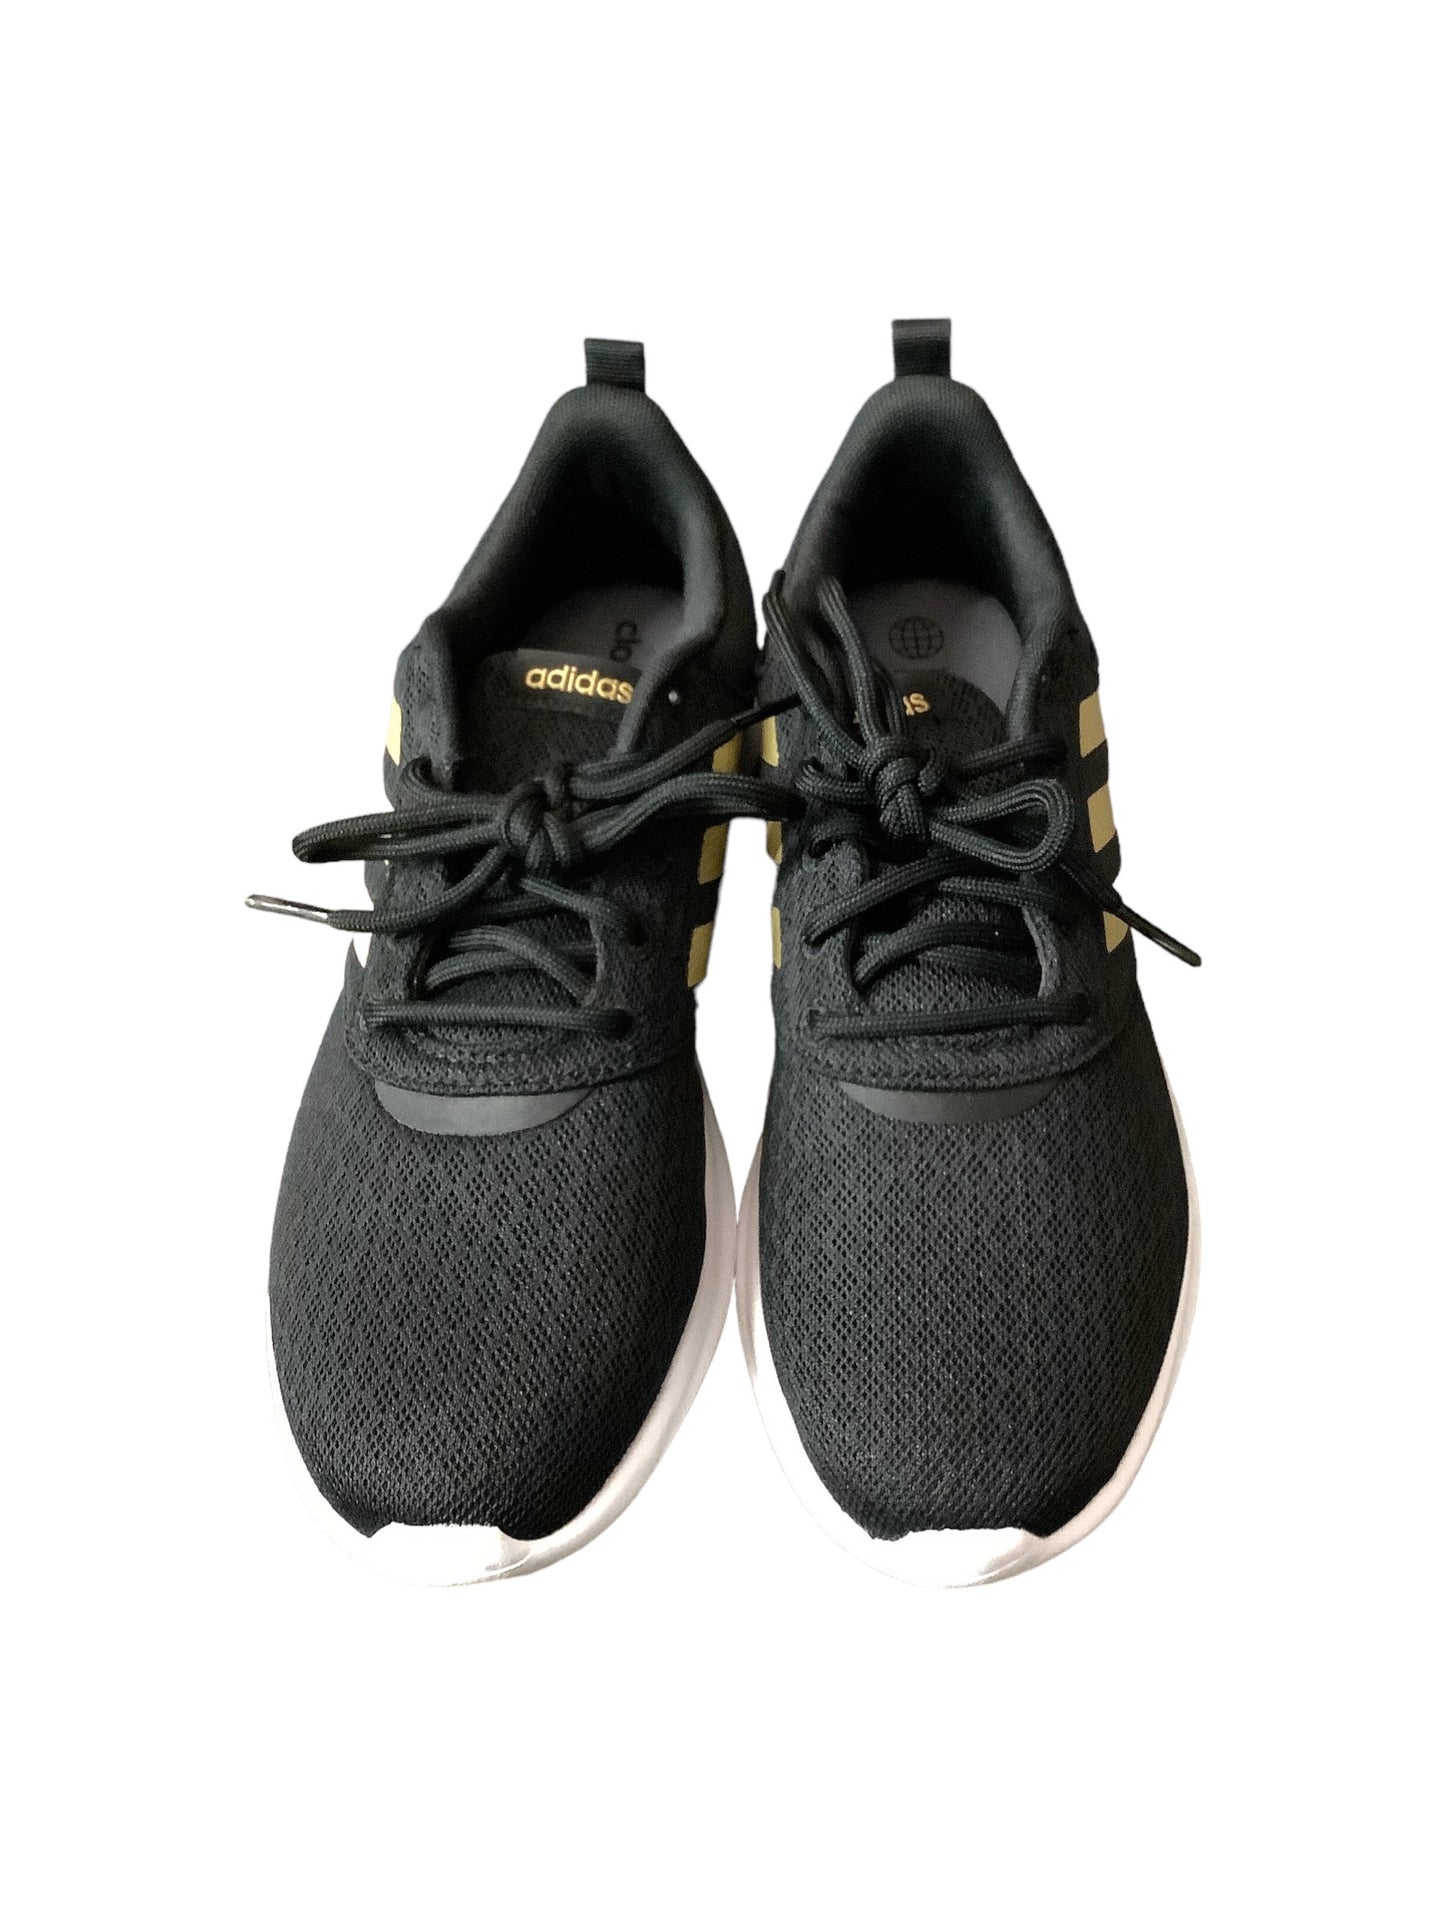 Black Shoes Athletic Adidas, Size 9